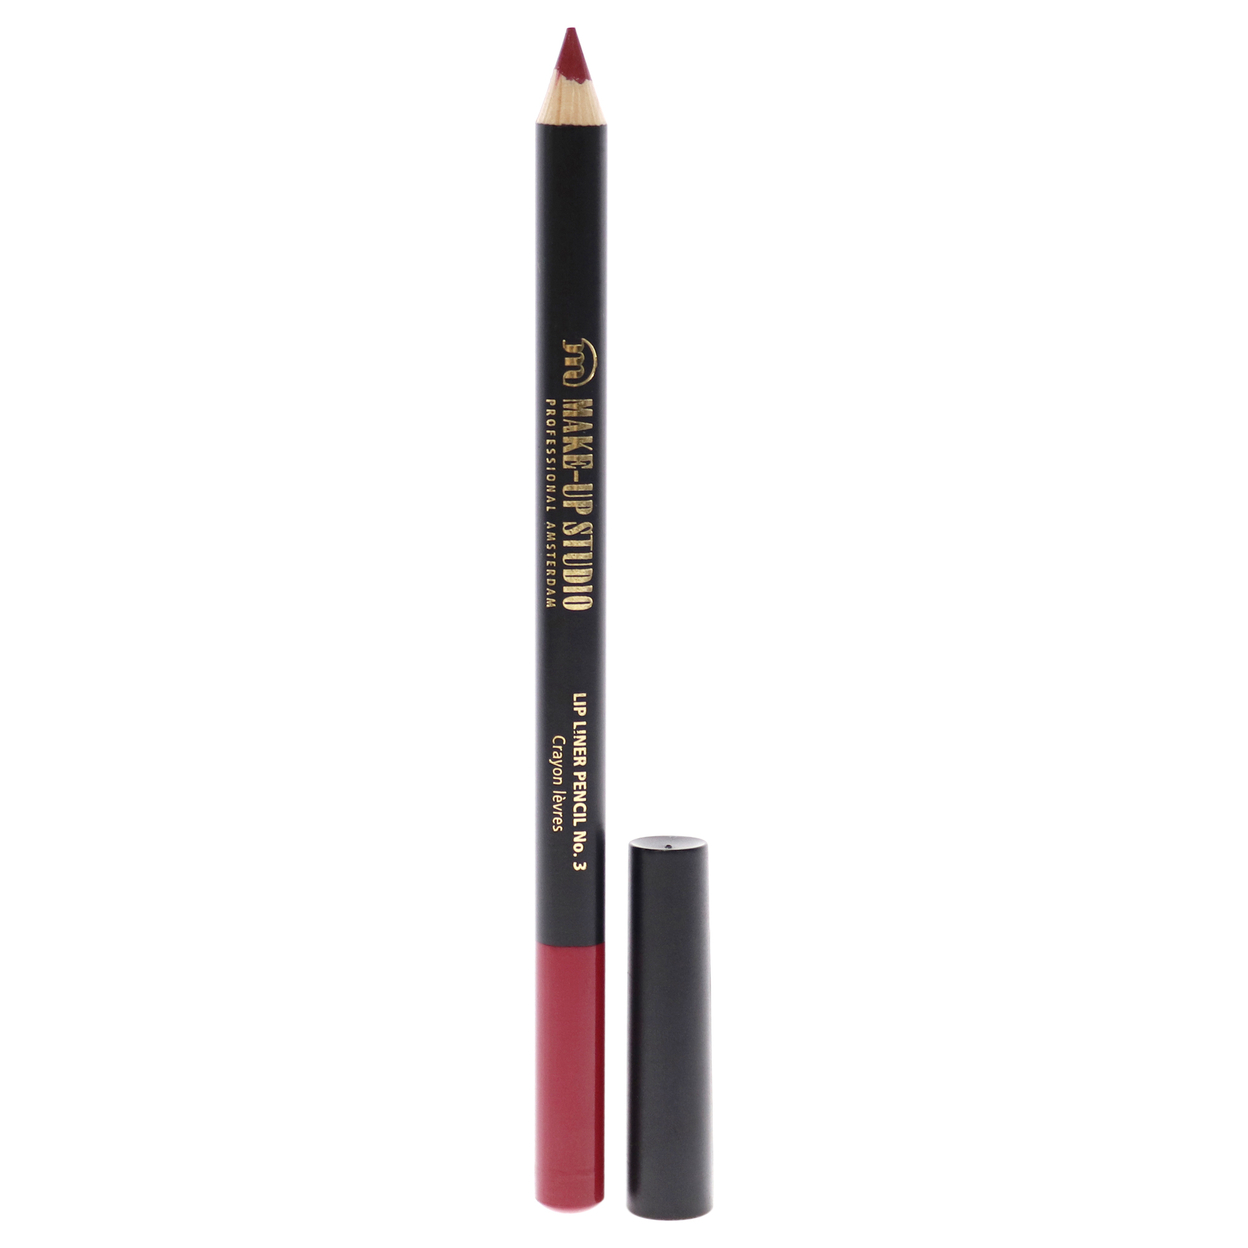 Make-Up Studio Lip Liner Pencil - 3 Neutral Pink-Red 0.04 Oz